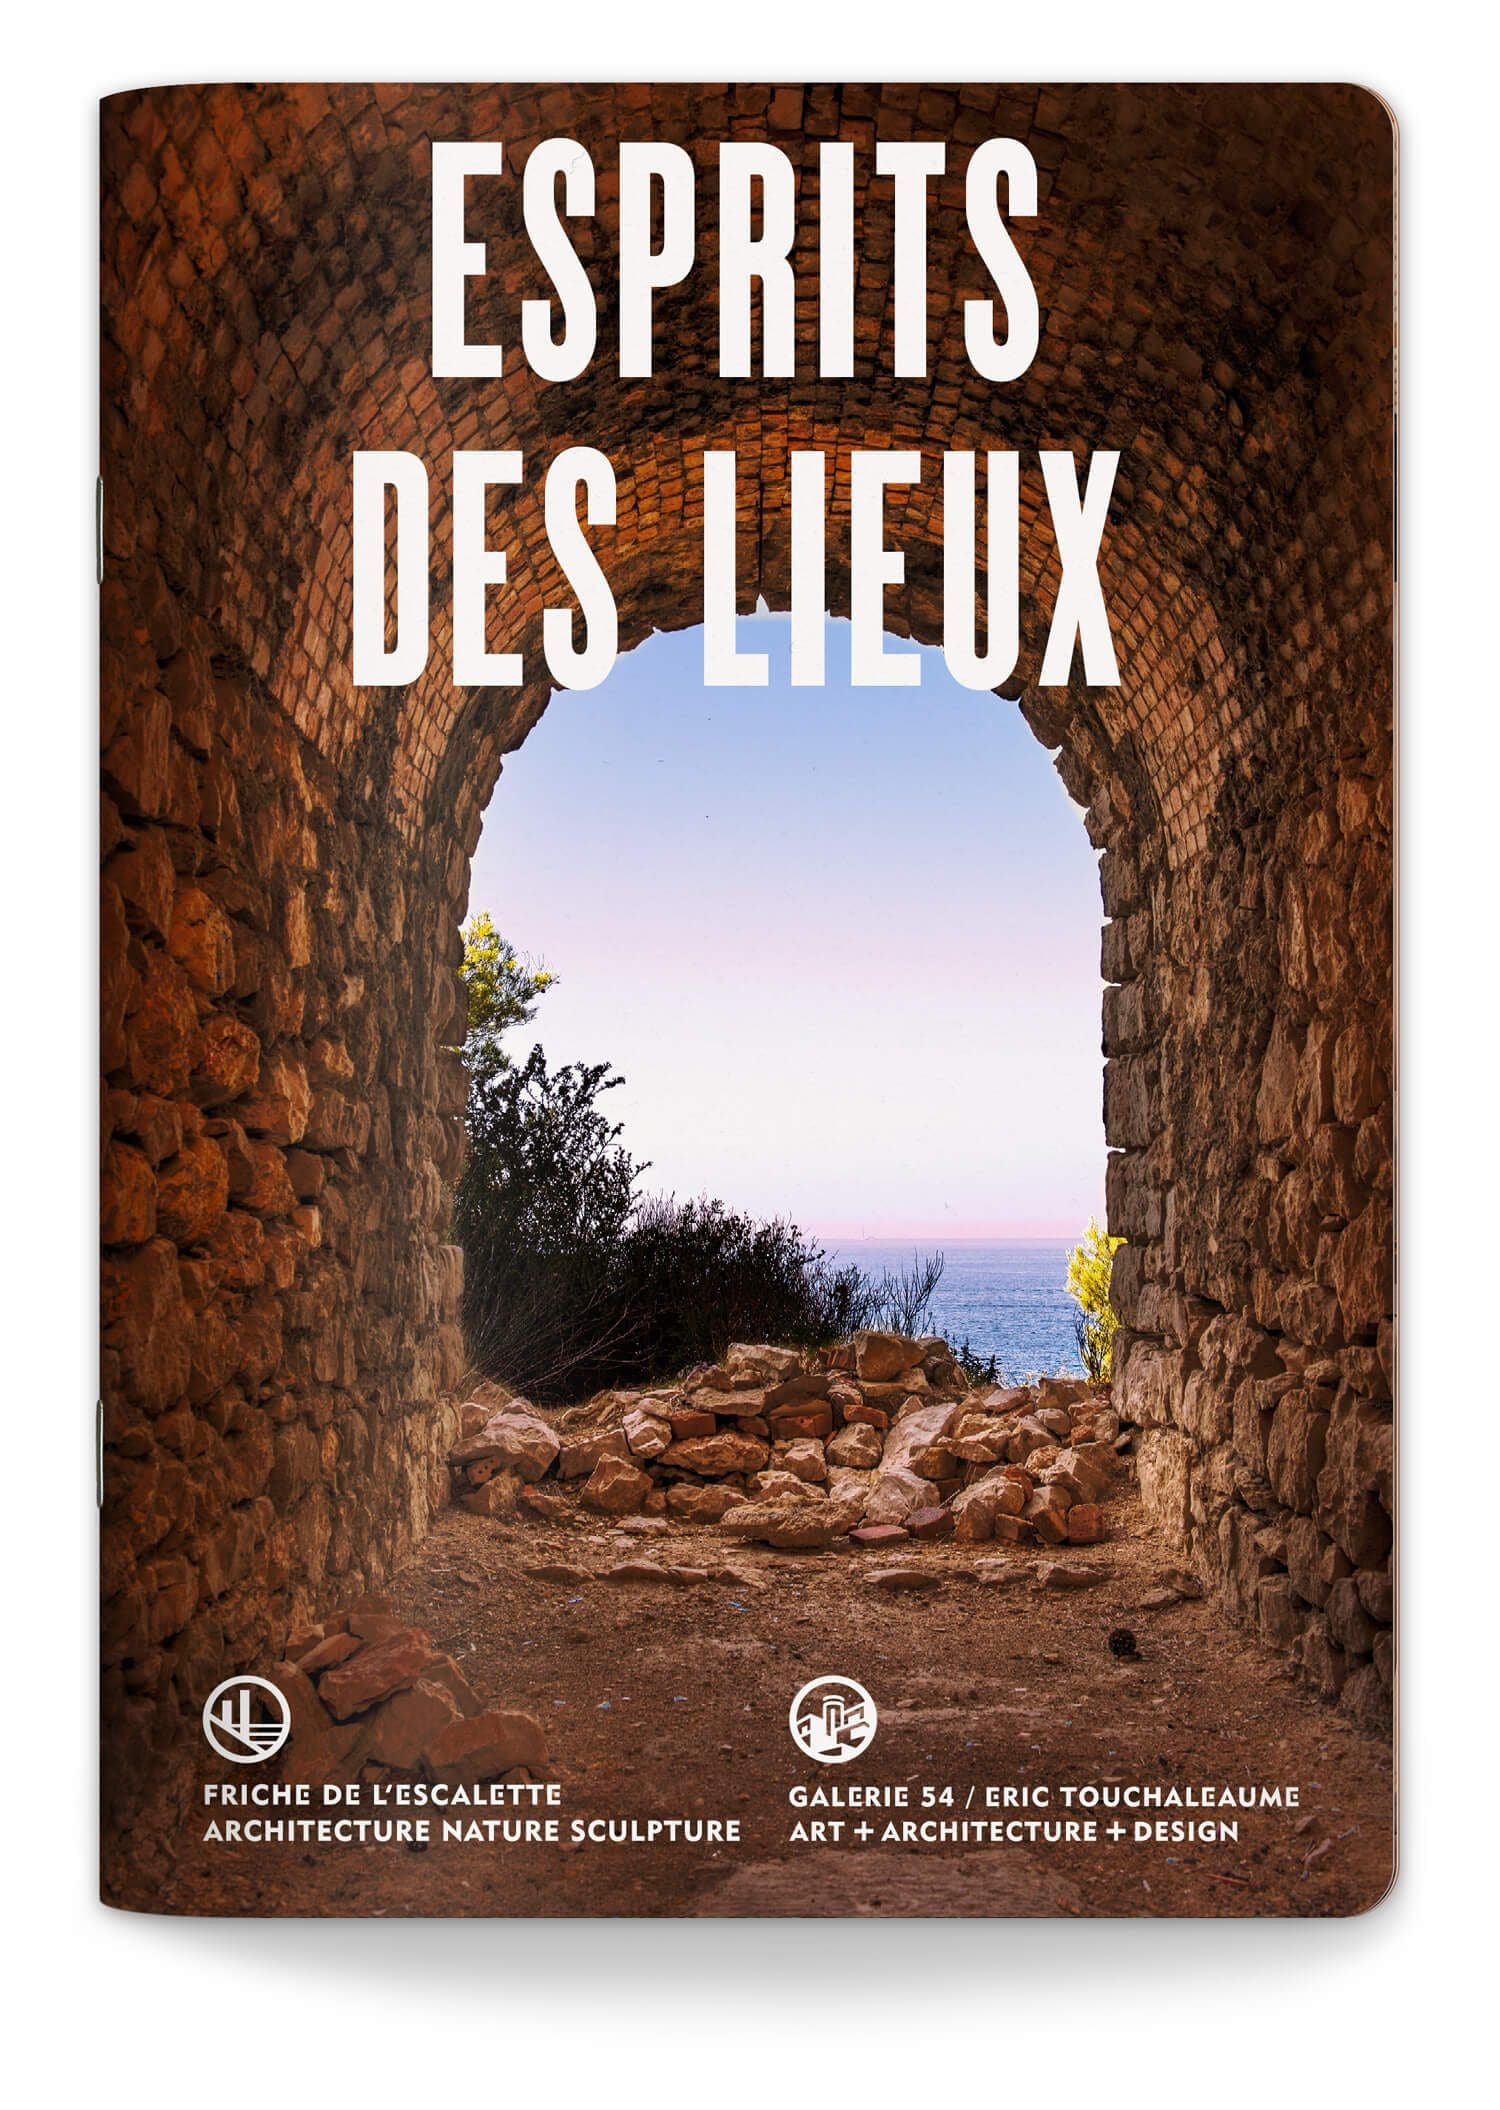 Couverture du livret de la saison 2021 de l'exposition Esprits des lieux à la Friche de l'escalette à Marseille, design IchetKar